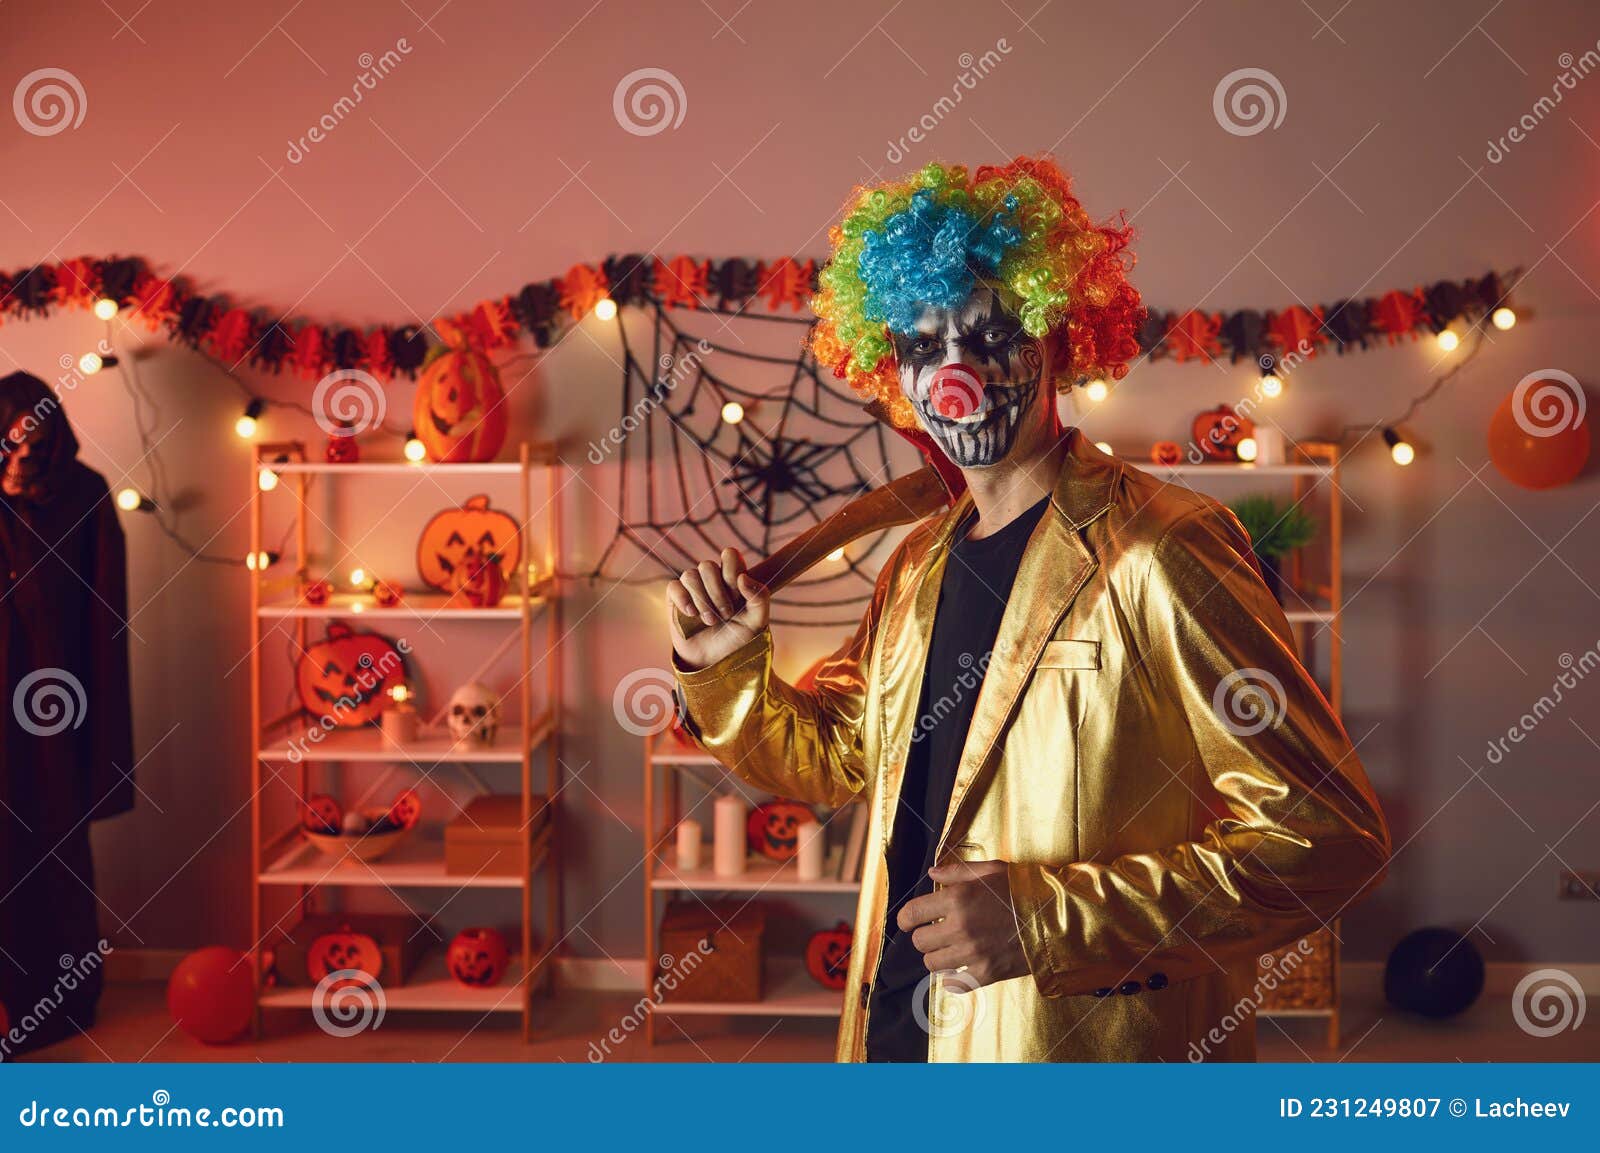 Homem com uma fantasia assustadora e maquiagem em uma festa de halloween